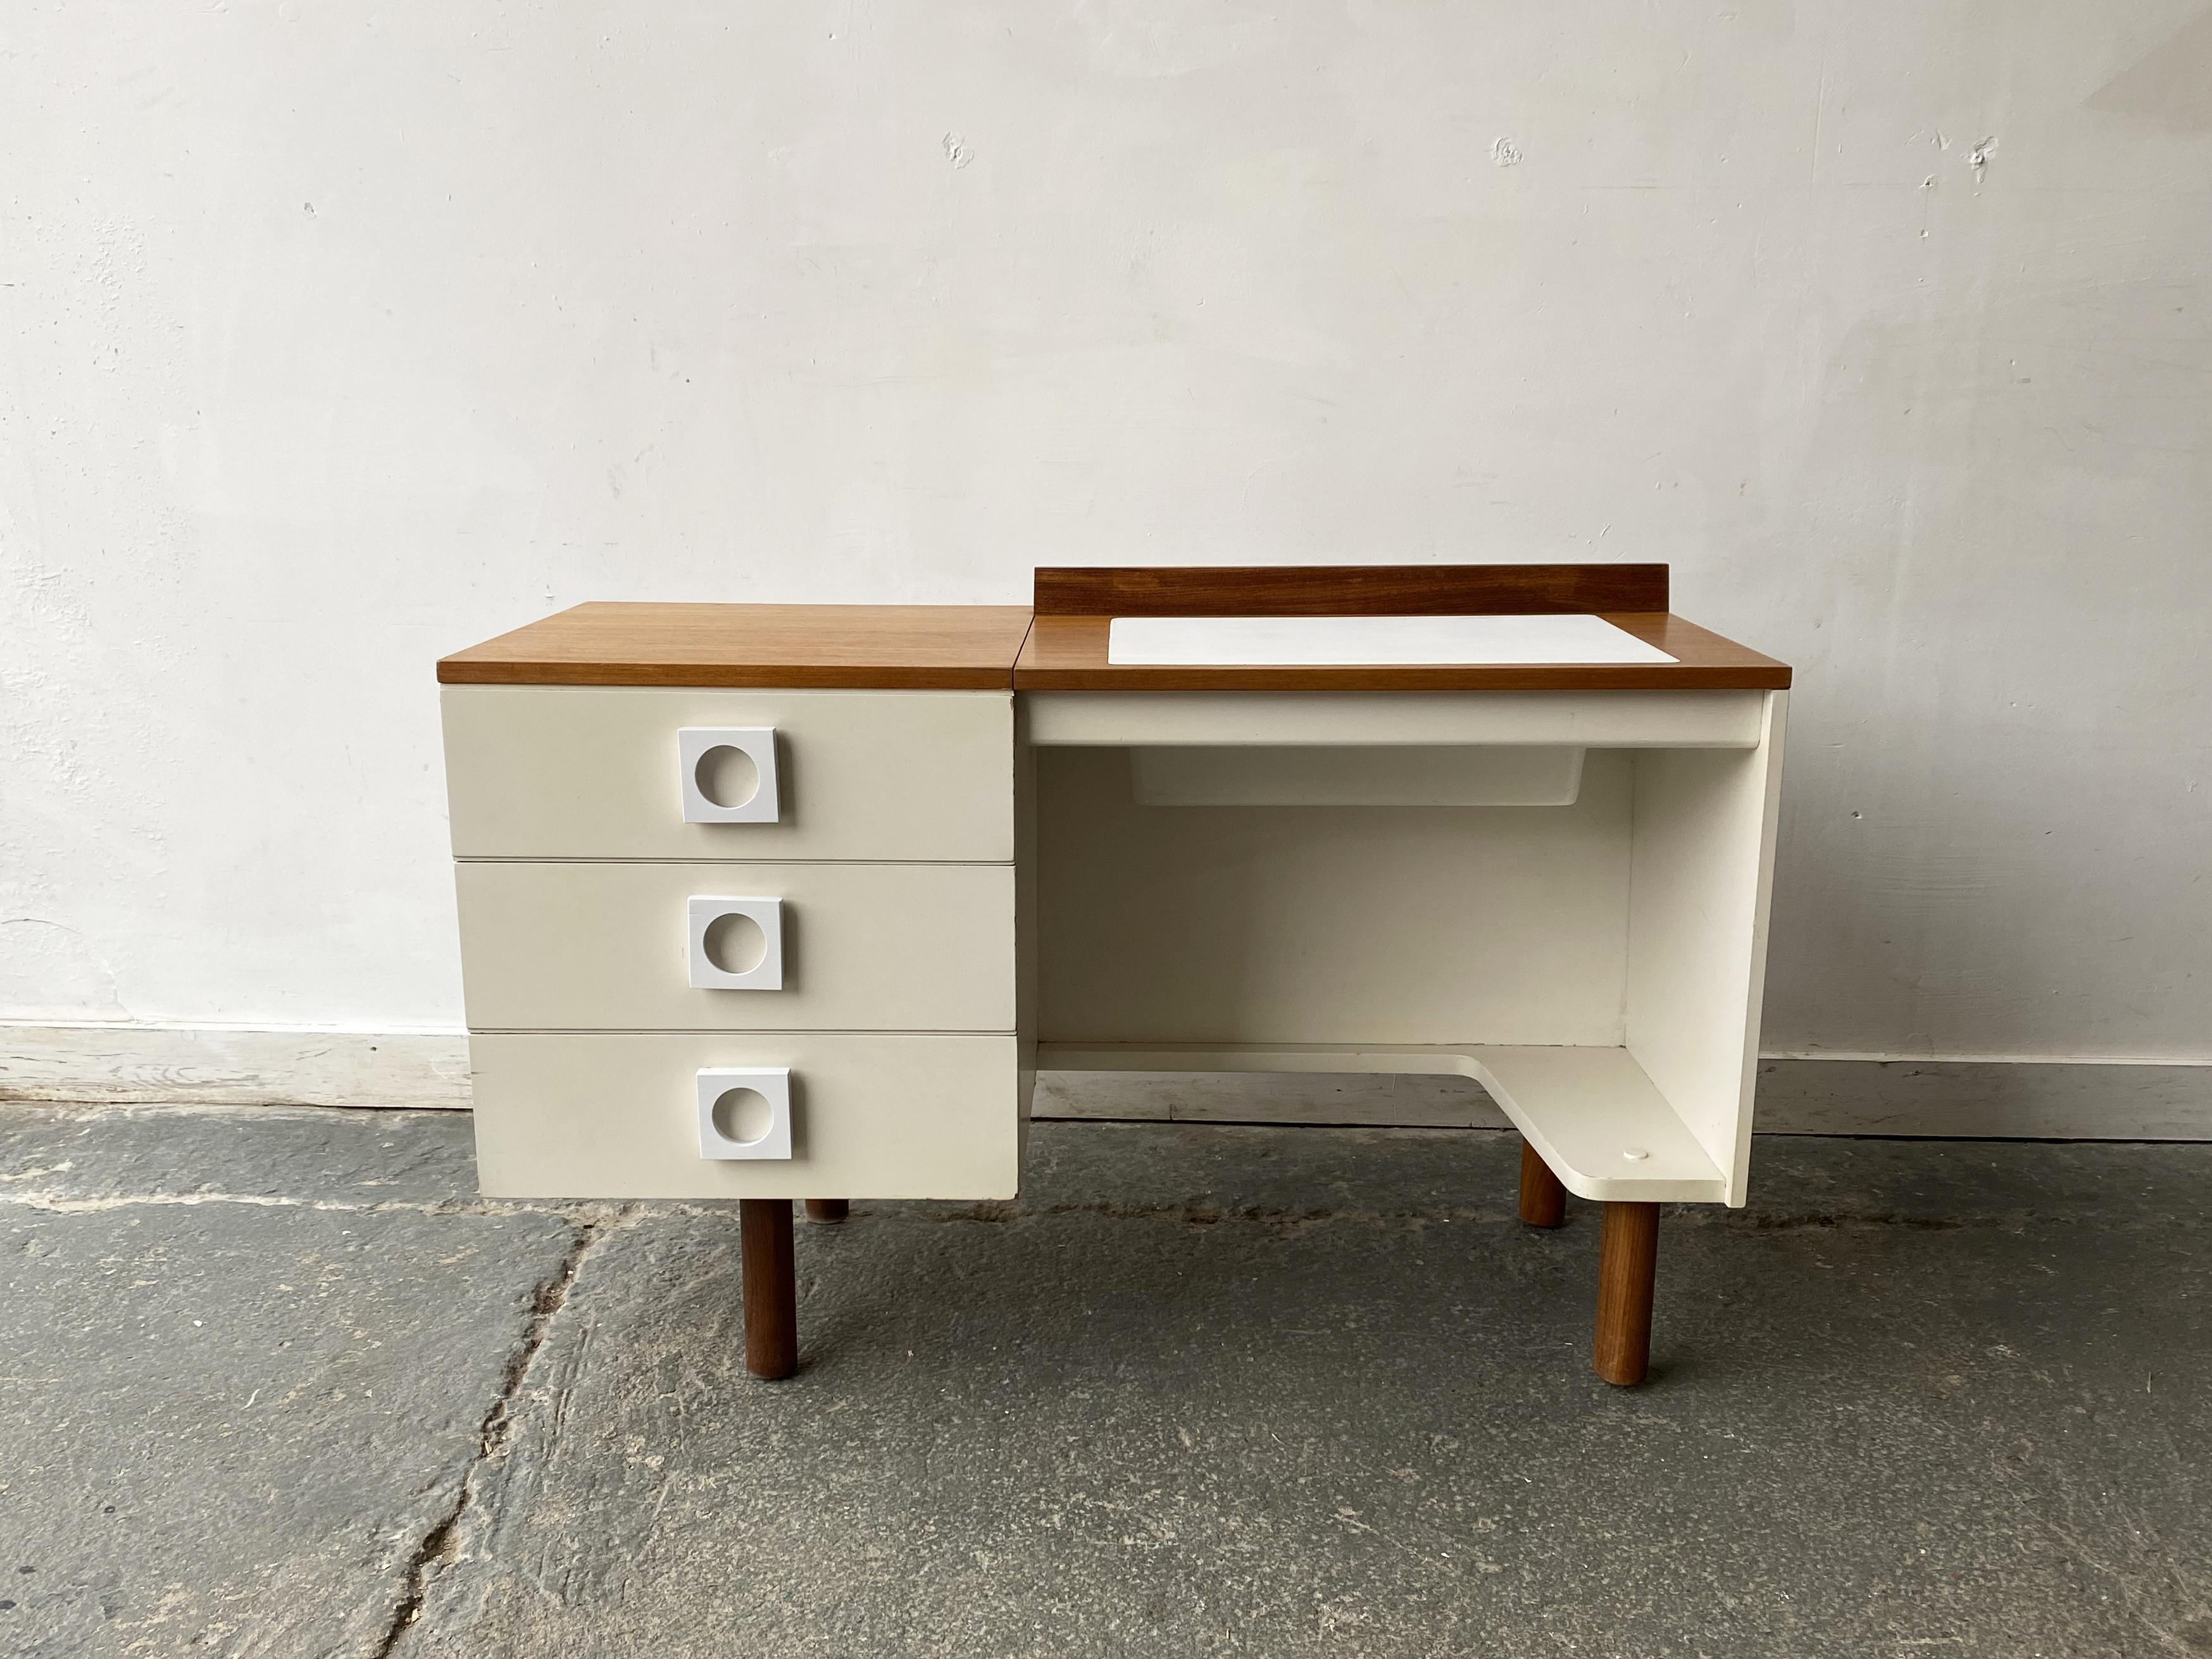 Una inusual y rara combinación de escritorio y tocador del fabricante inglés Uniflex. Con la solapa bajada  es una mesa de trabajo, levanta la solapa para descubrir un espejo y se convierte en un tocador. Contraste de melamina blanca y teca de color